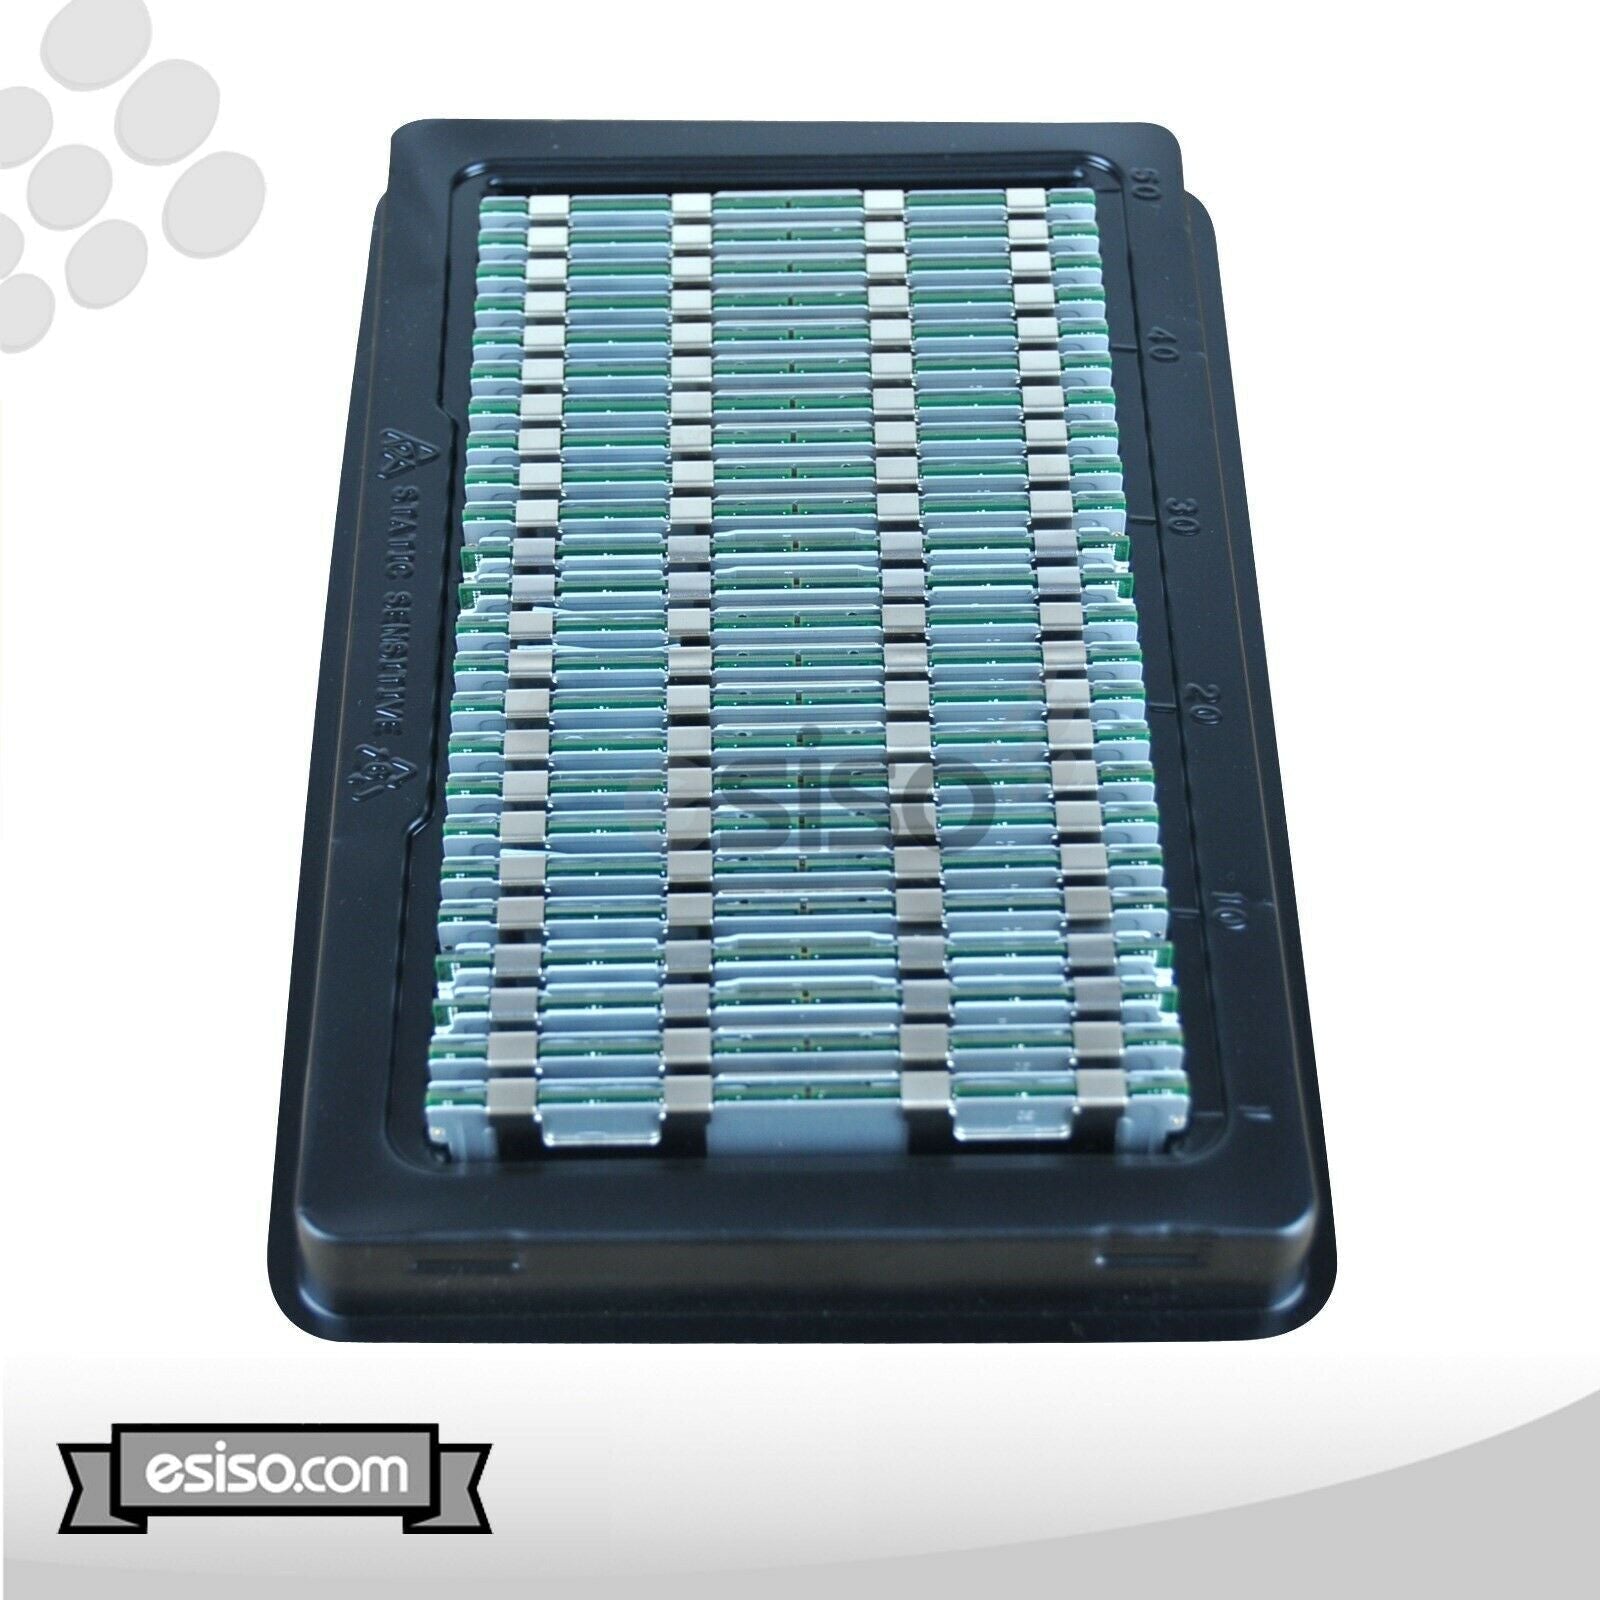 48GB (3x 16GB) 10600R RAM MEMORY MODULE FOR HP BL680C DL165 DL385 G7